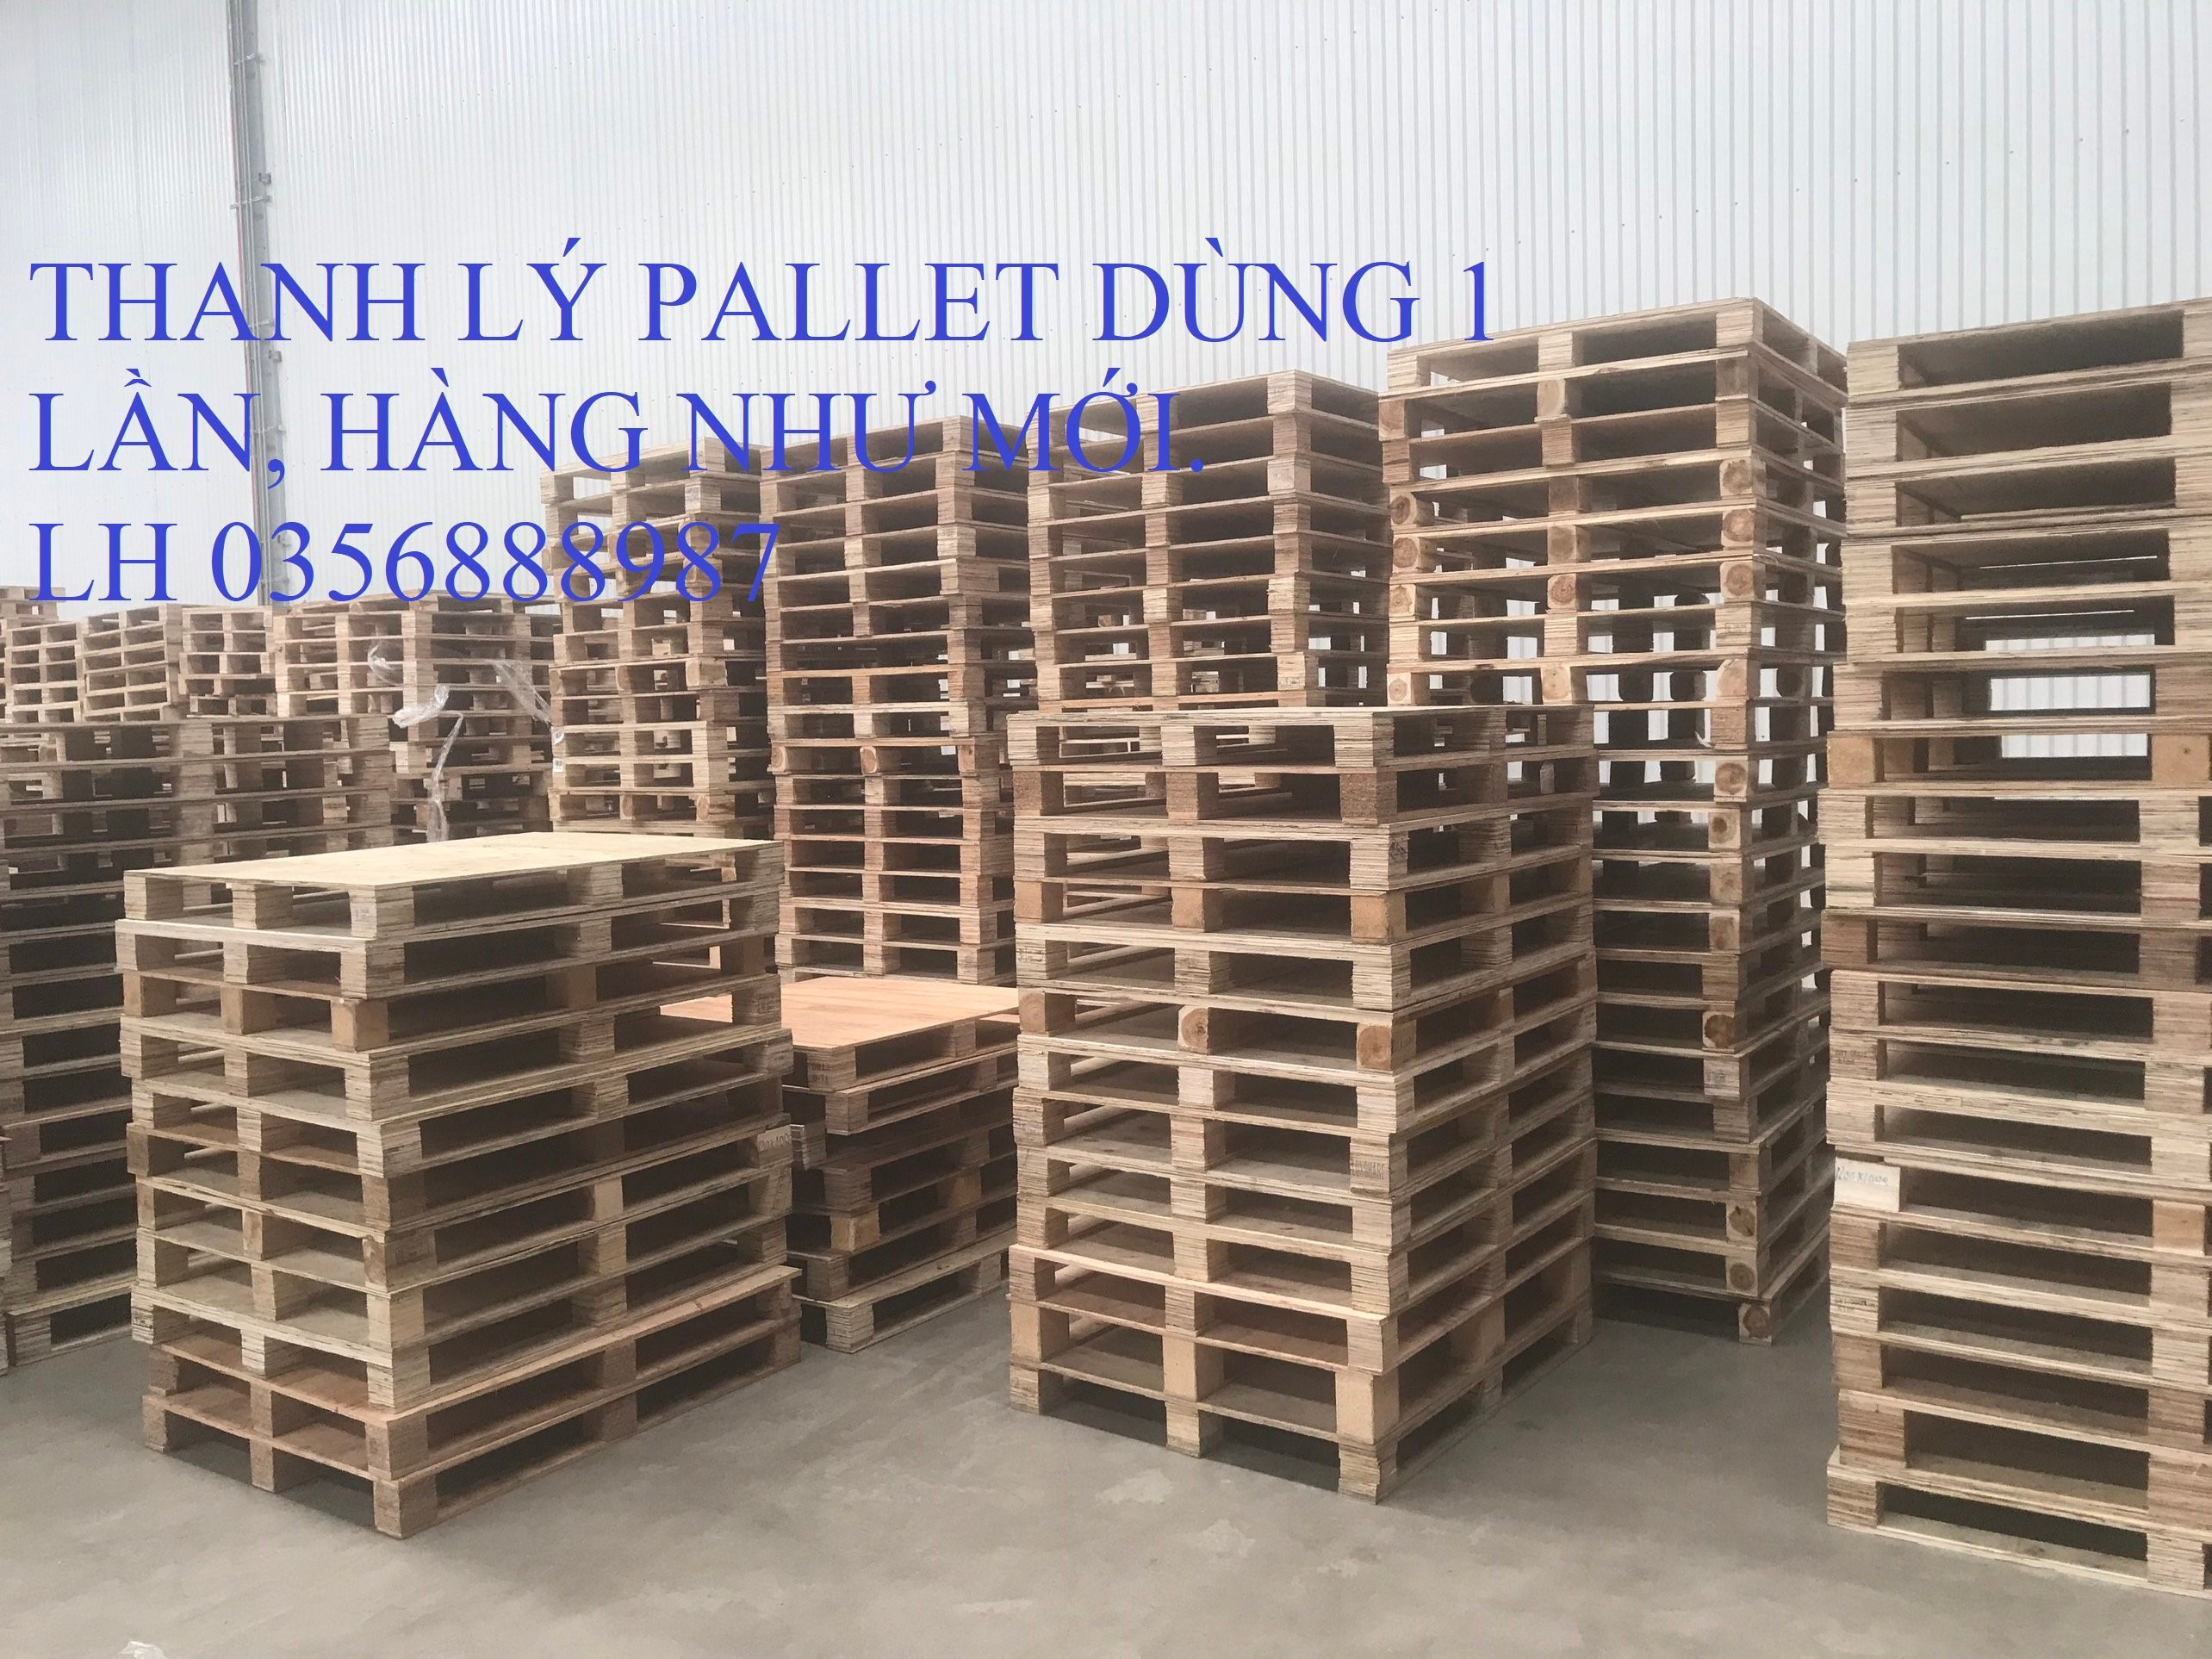 Pallet bằng gỗ thanh lý 1300x1400